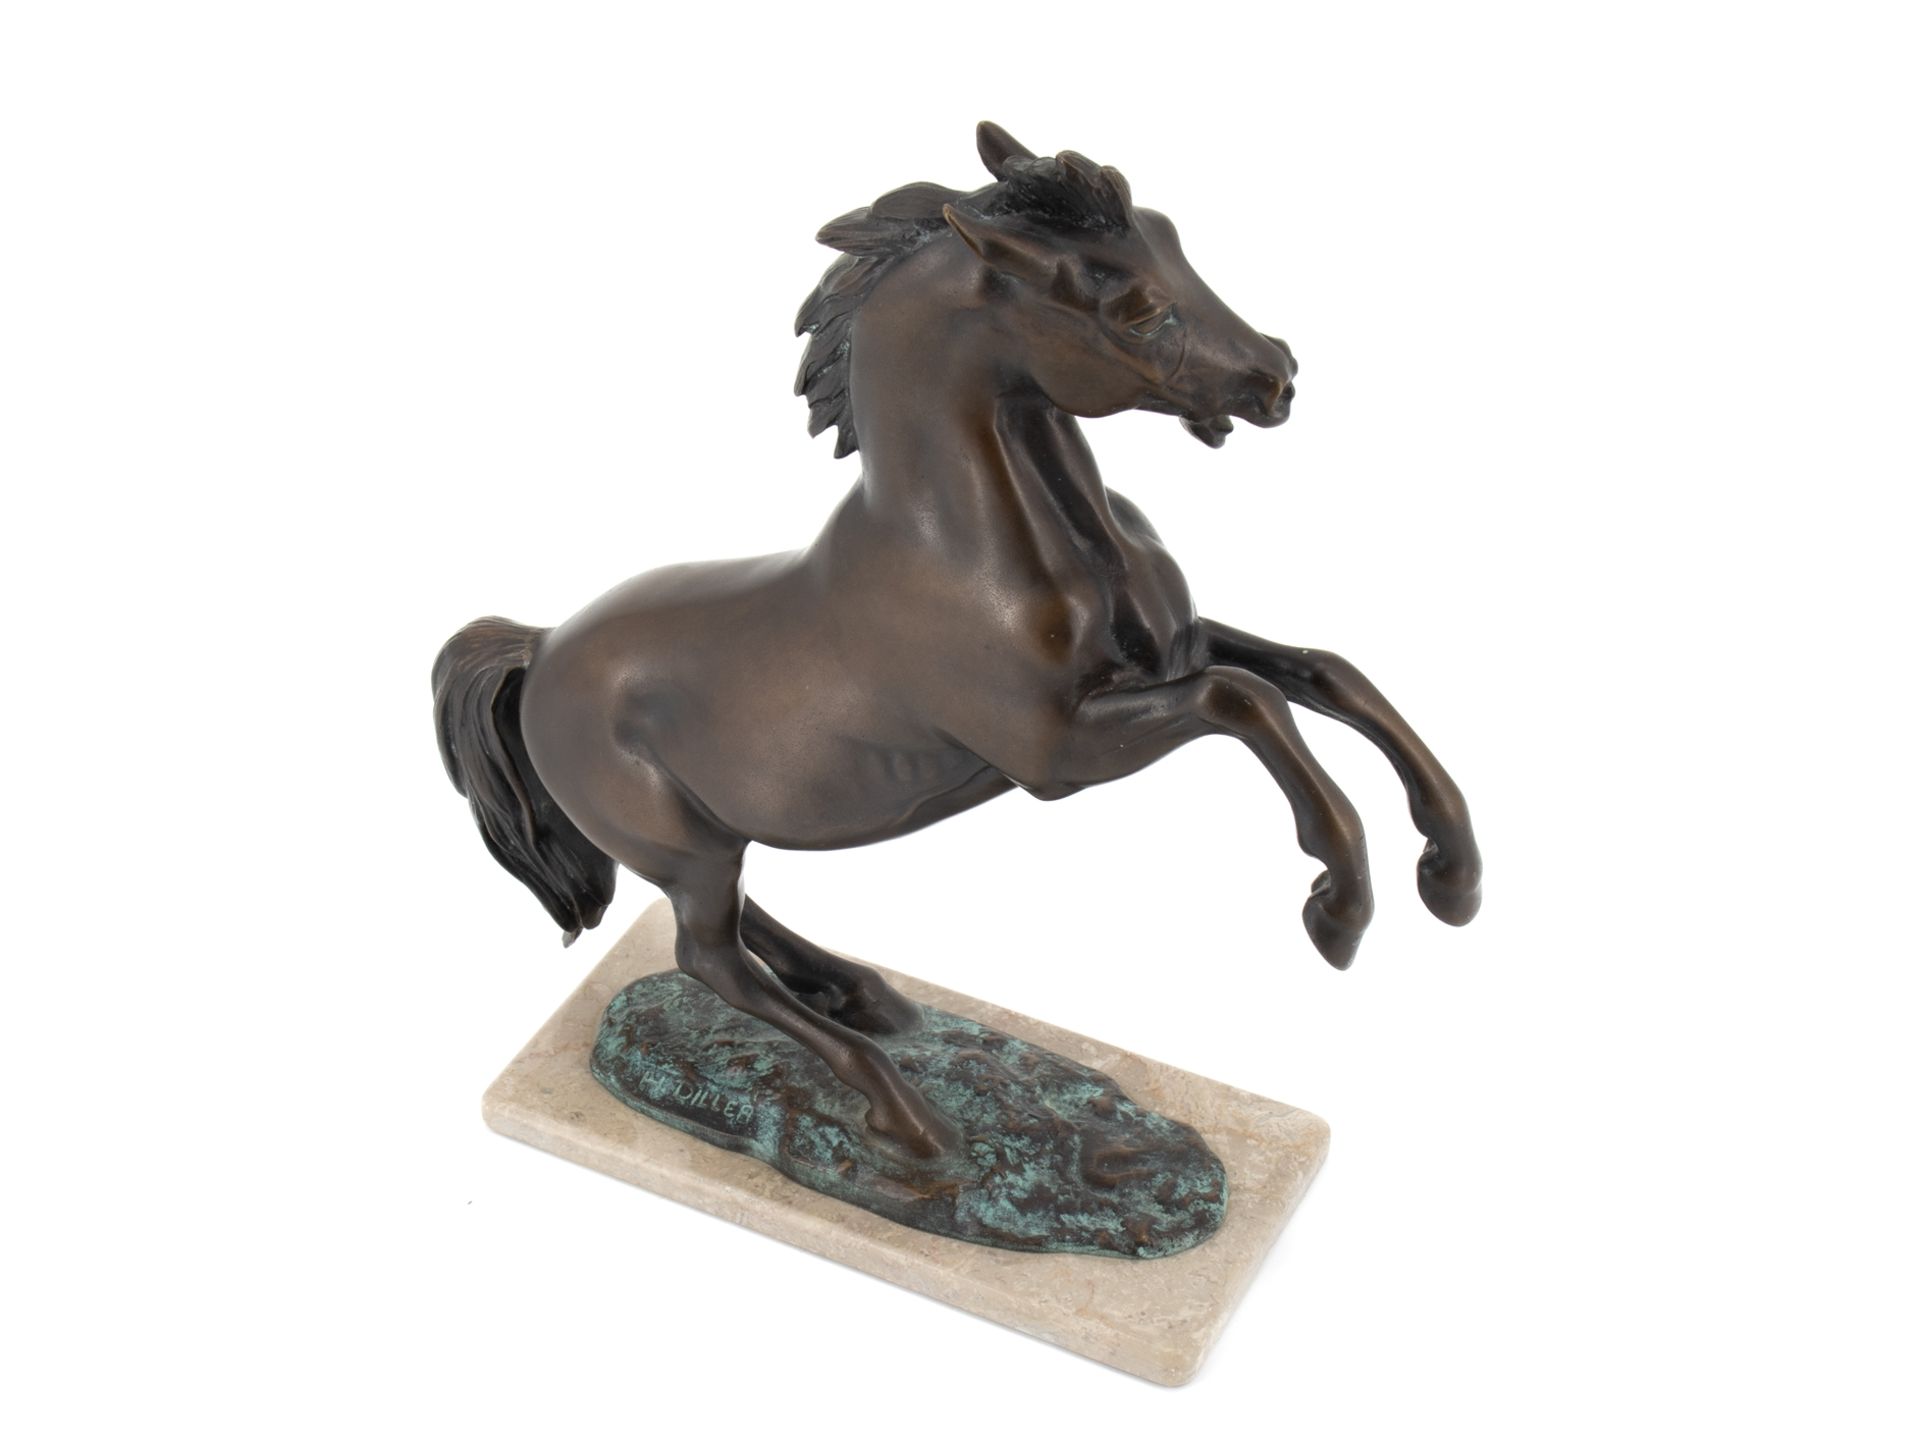 Diller Helmut (1911 - 1984), Bronzeskulptur "Steigendes Pferd" - Bild 7 aus 9